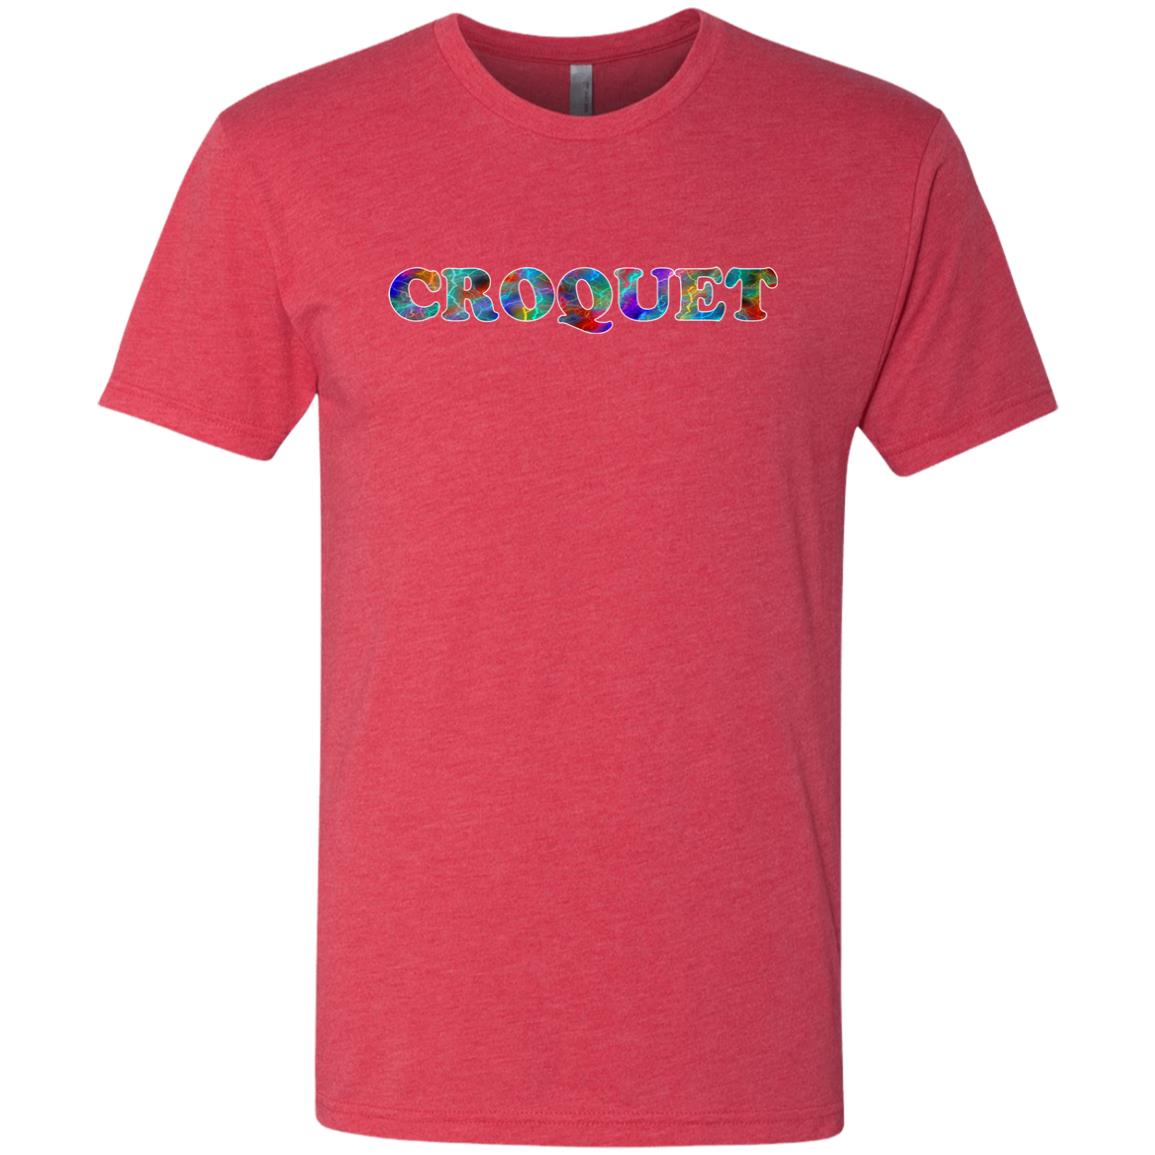 Croquet Sport T-Shirt